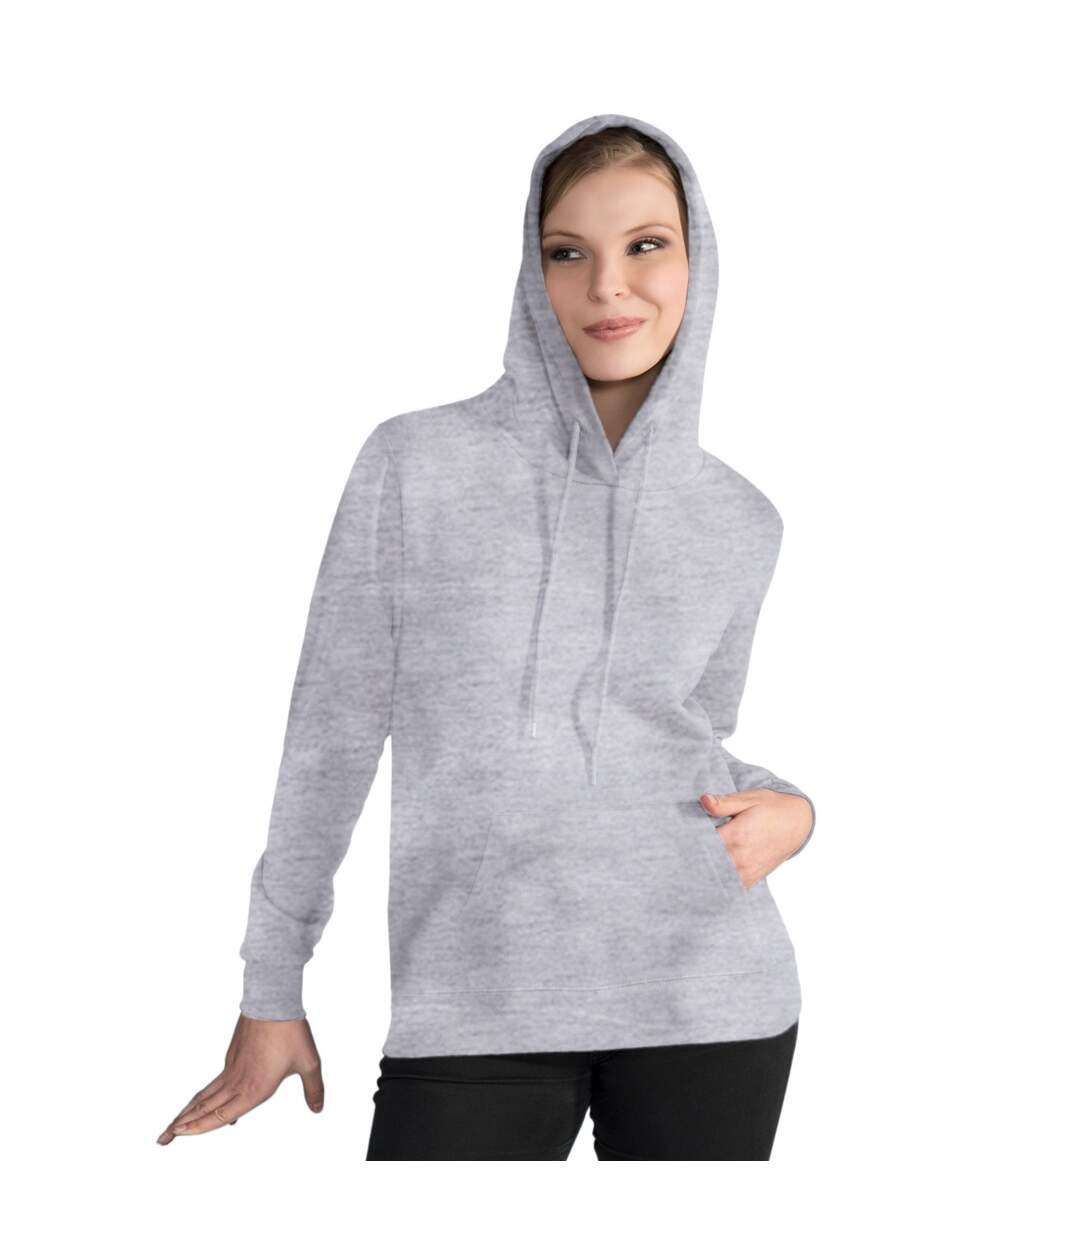 SG Ladies/Womens Plain Hooded Sweatshirt Top / Hoodie (Light Oxford)